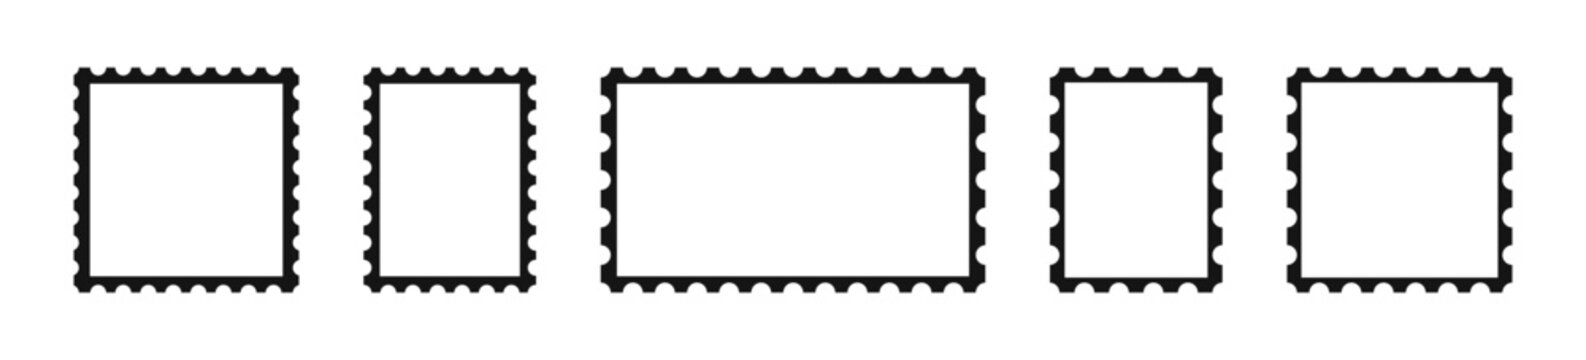 Postage stamp vector icons. Postage stamp set. Mockup postage stamps. Blank postage stamp borders templates. v